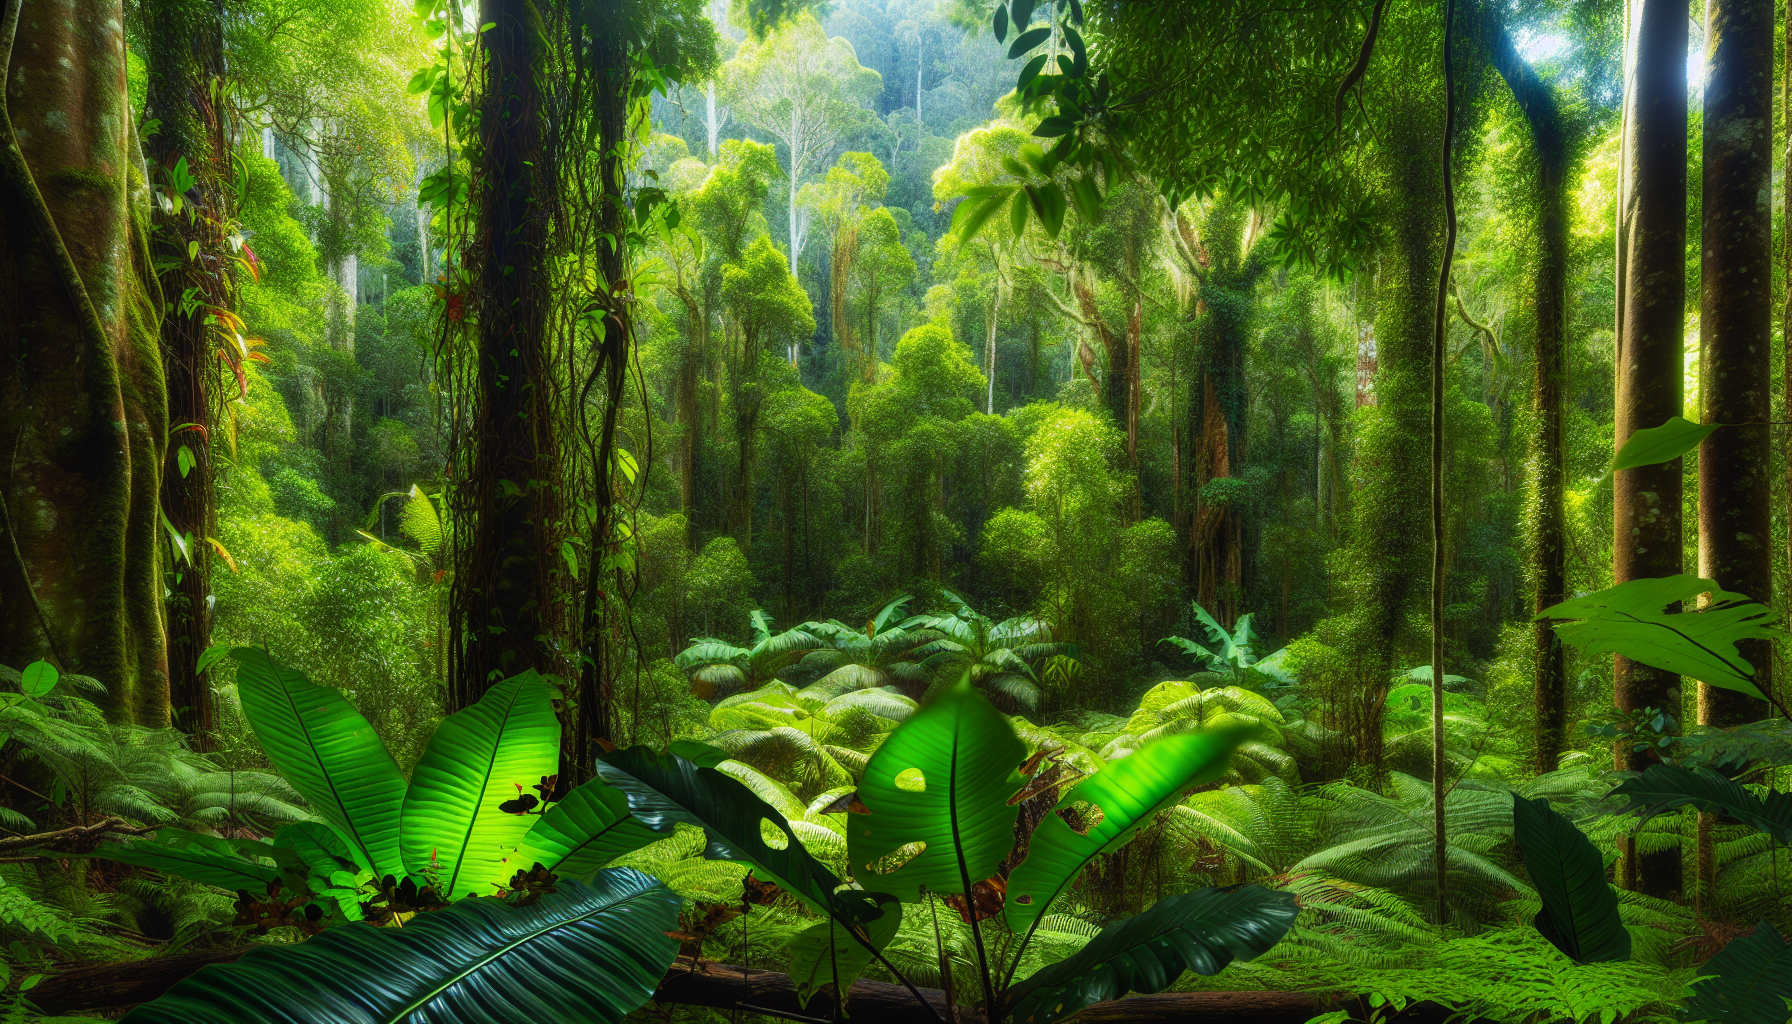 Lush rainforest in North Queensland